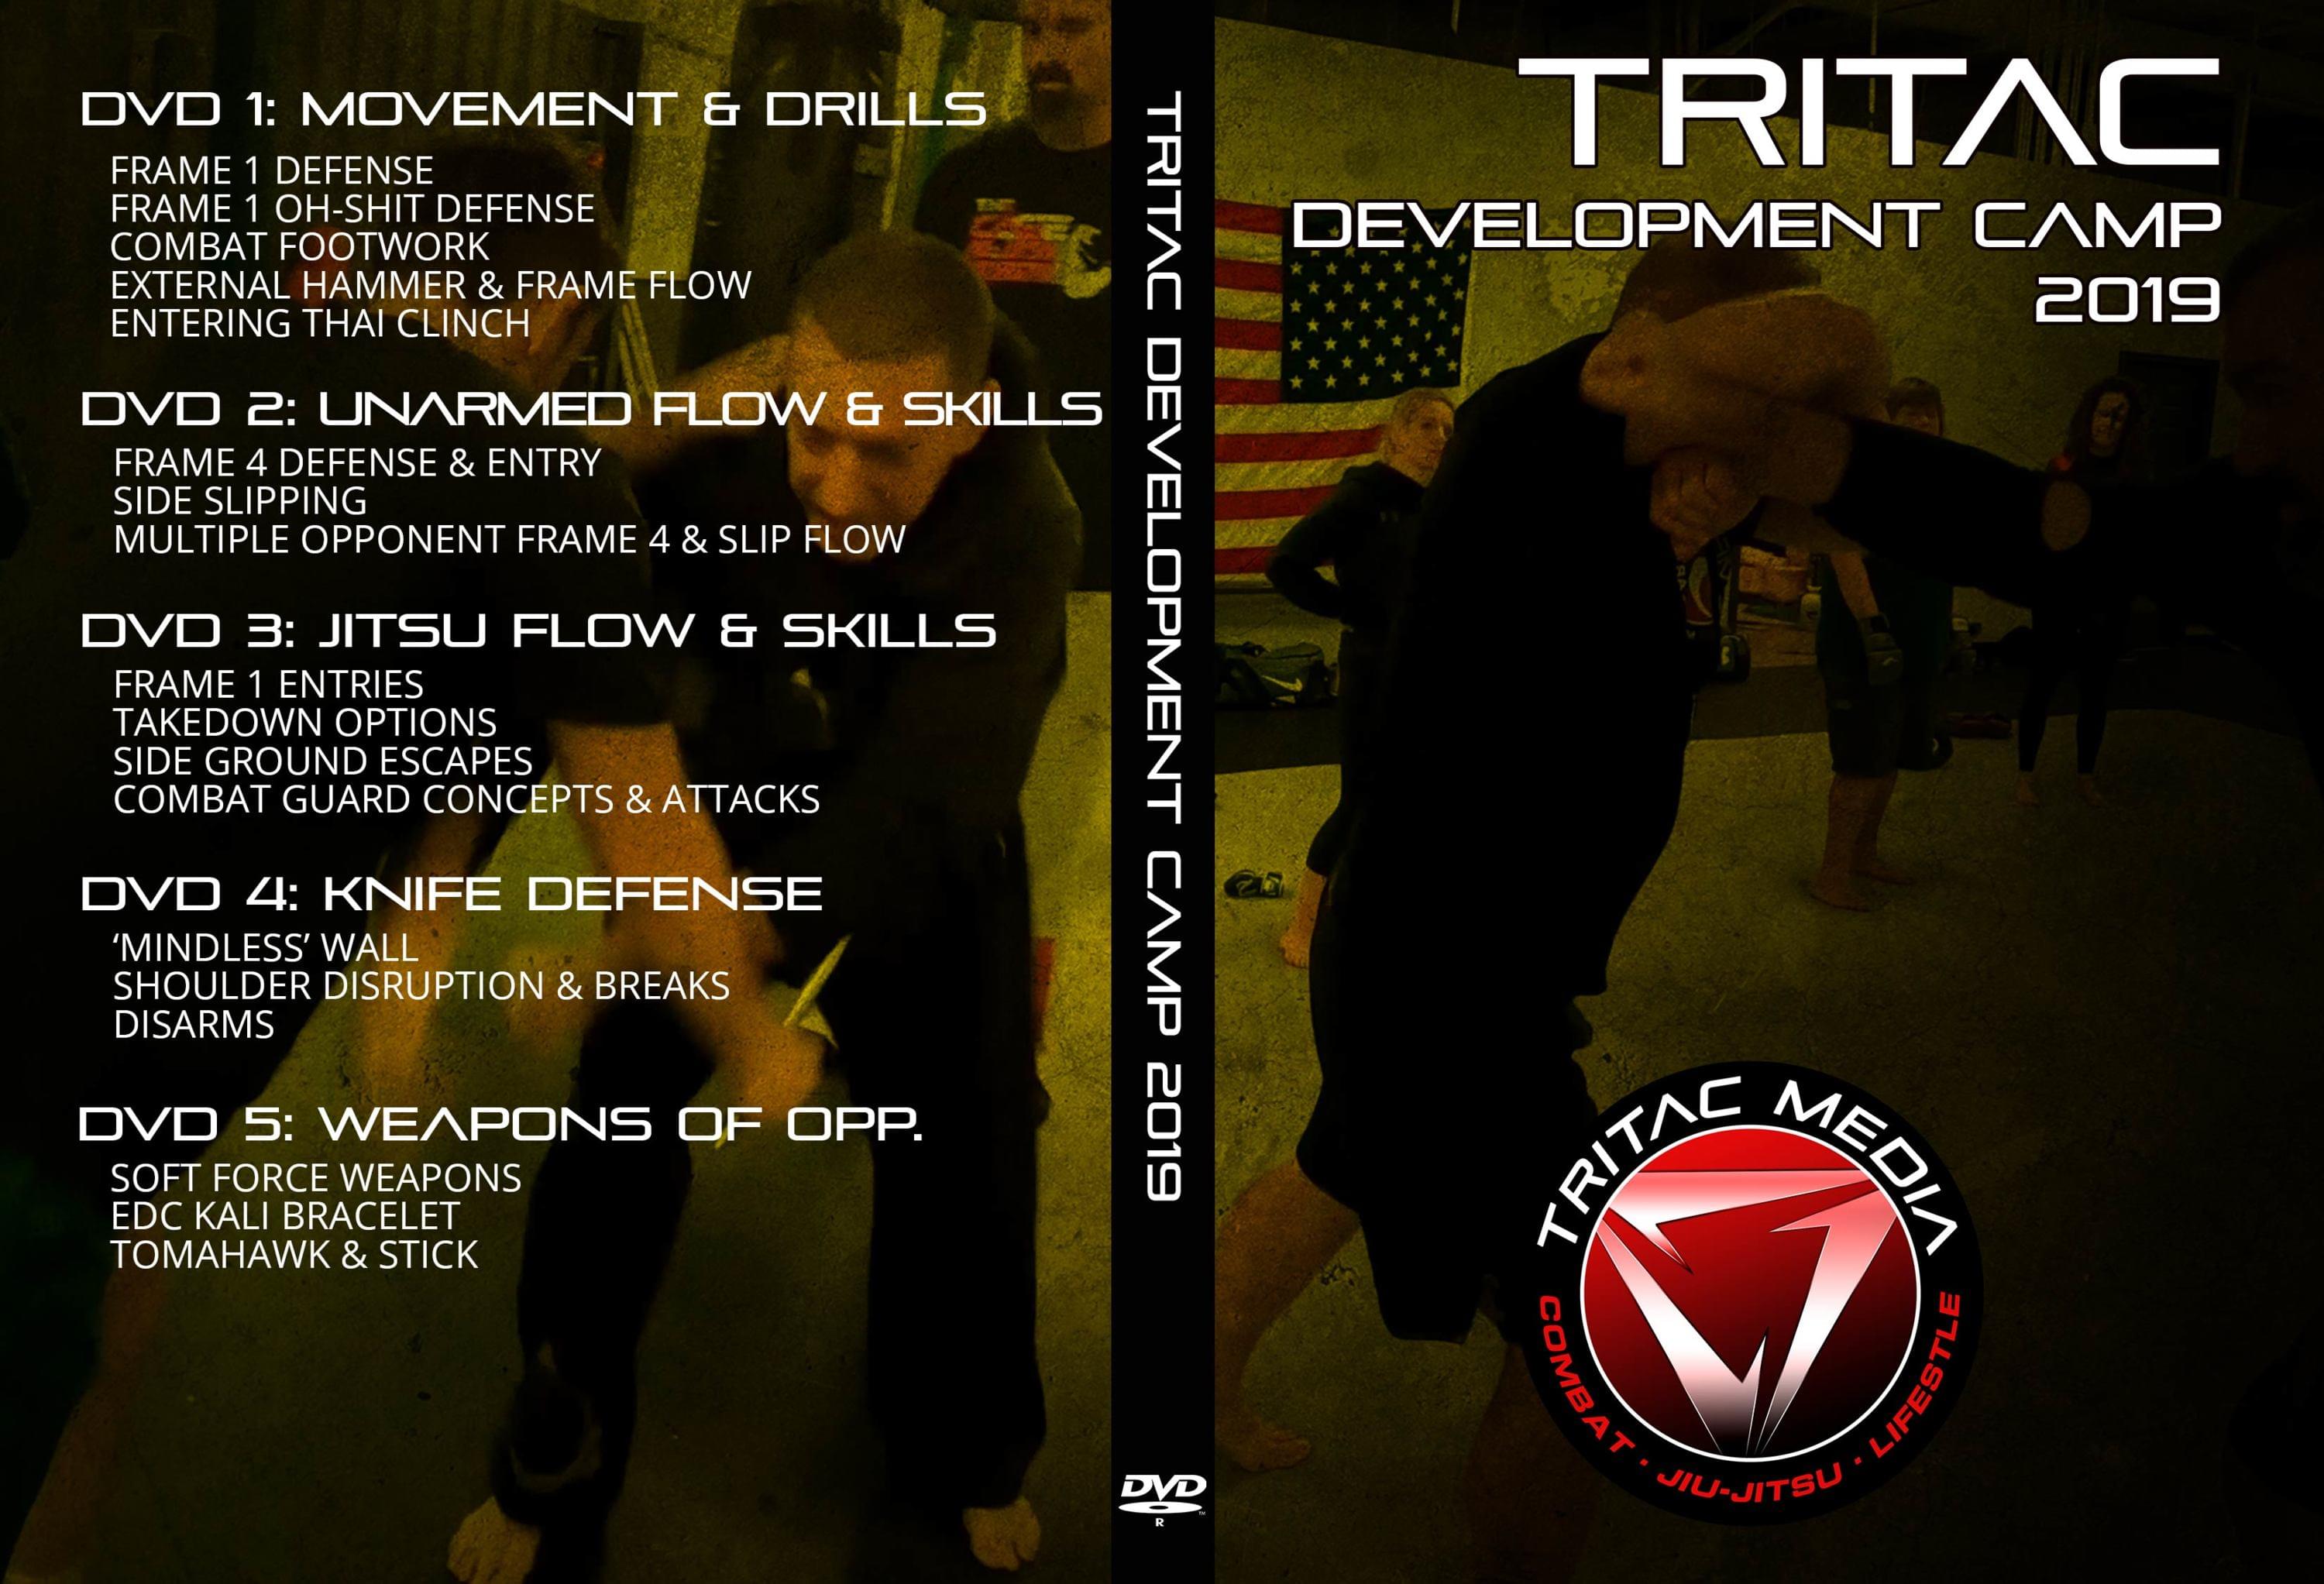 TRITAC Martial Arts Camp DVD Insert